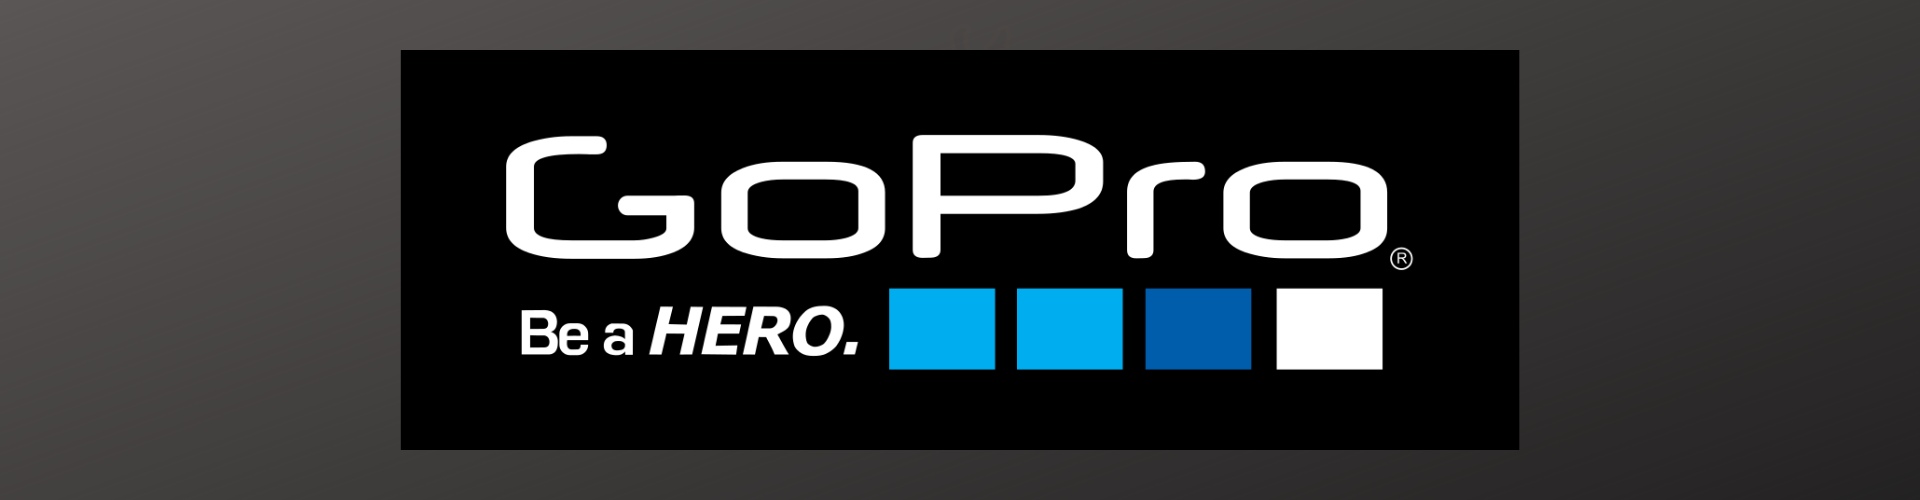 GoPro Brand Category